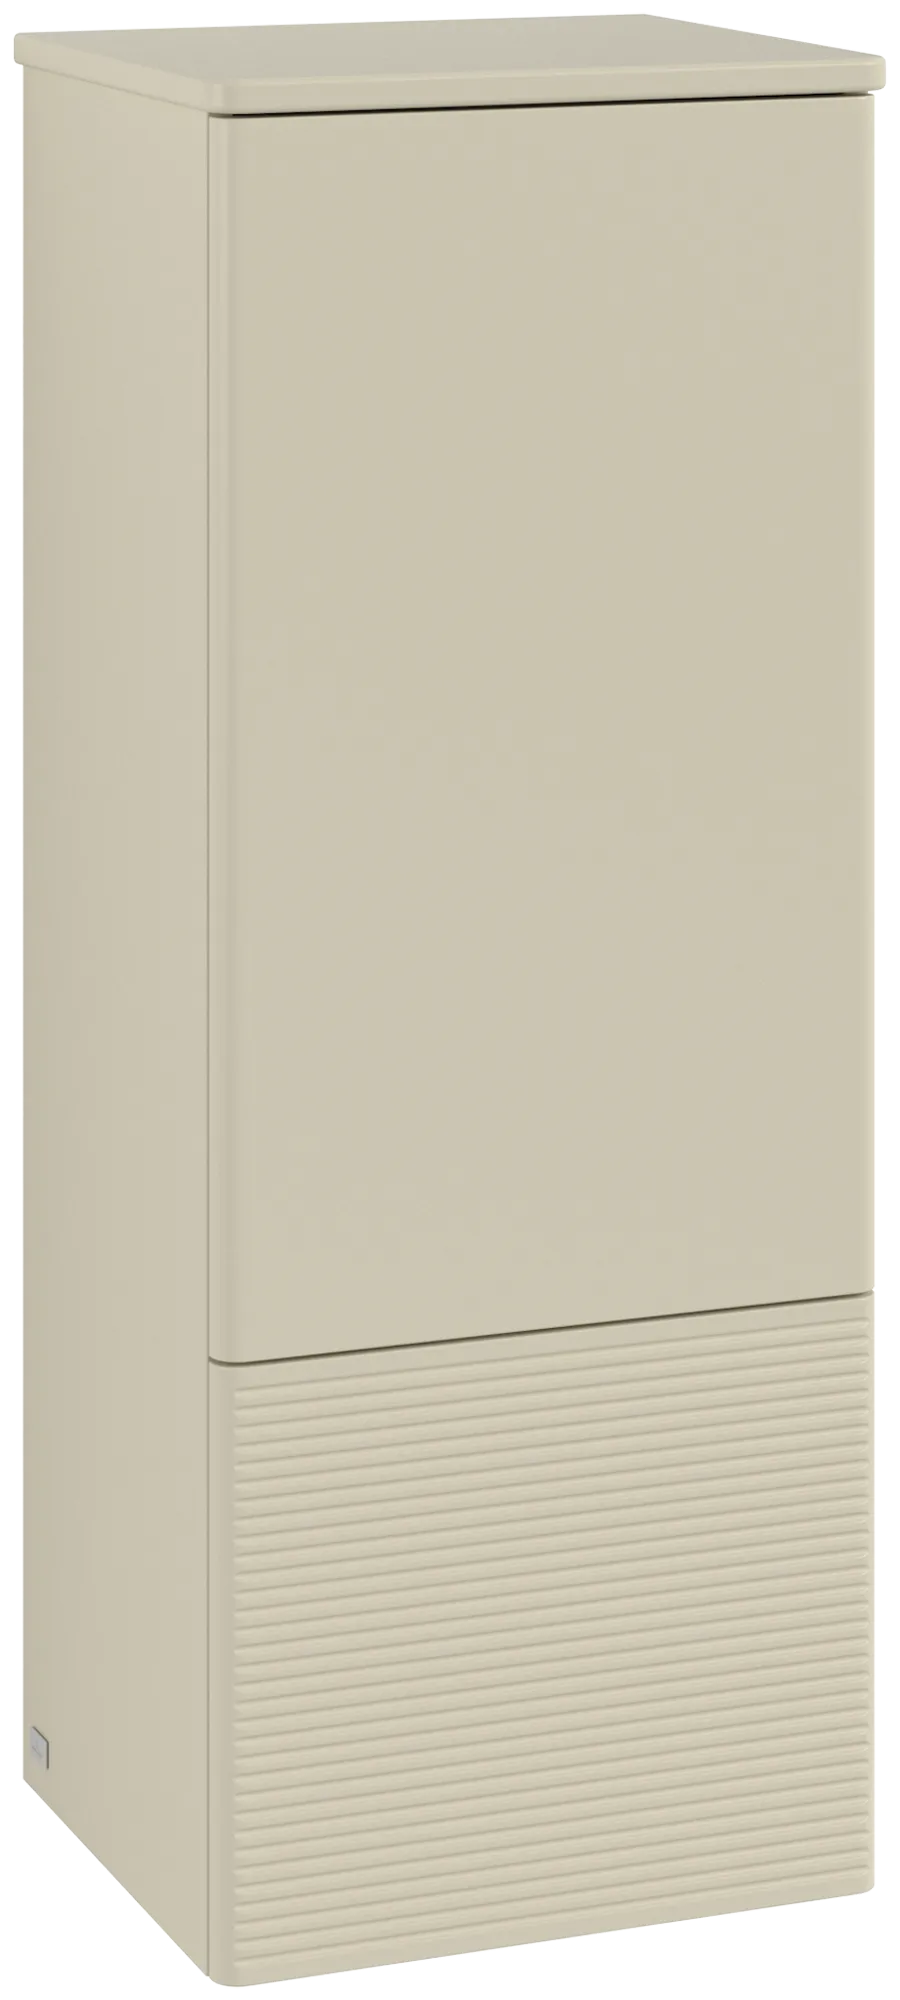 Picture of VILLEROY BOCH Antao Medium-height cabinet, 1 door, 414 x 1039 x 356 mm, Front with grain texture, Silk Grey Matt Lacquer / Silk Grey Matt Lacquer #K43100HJ